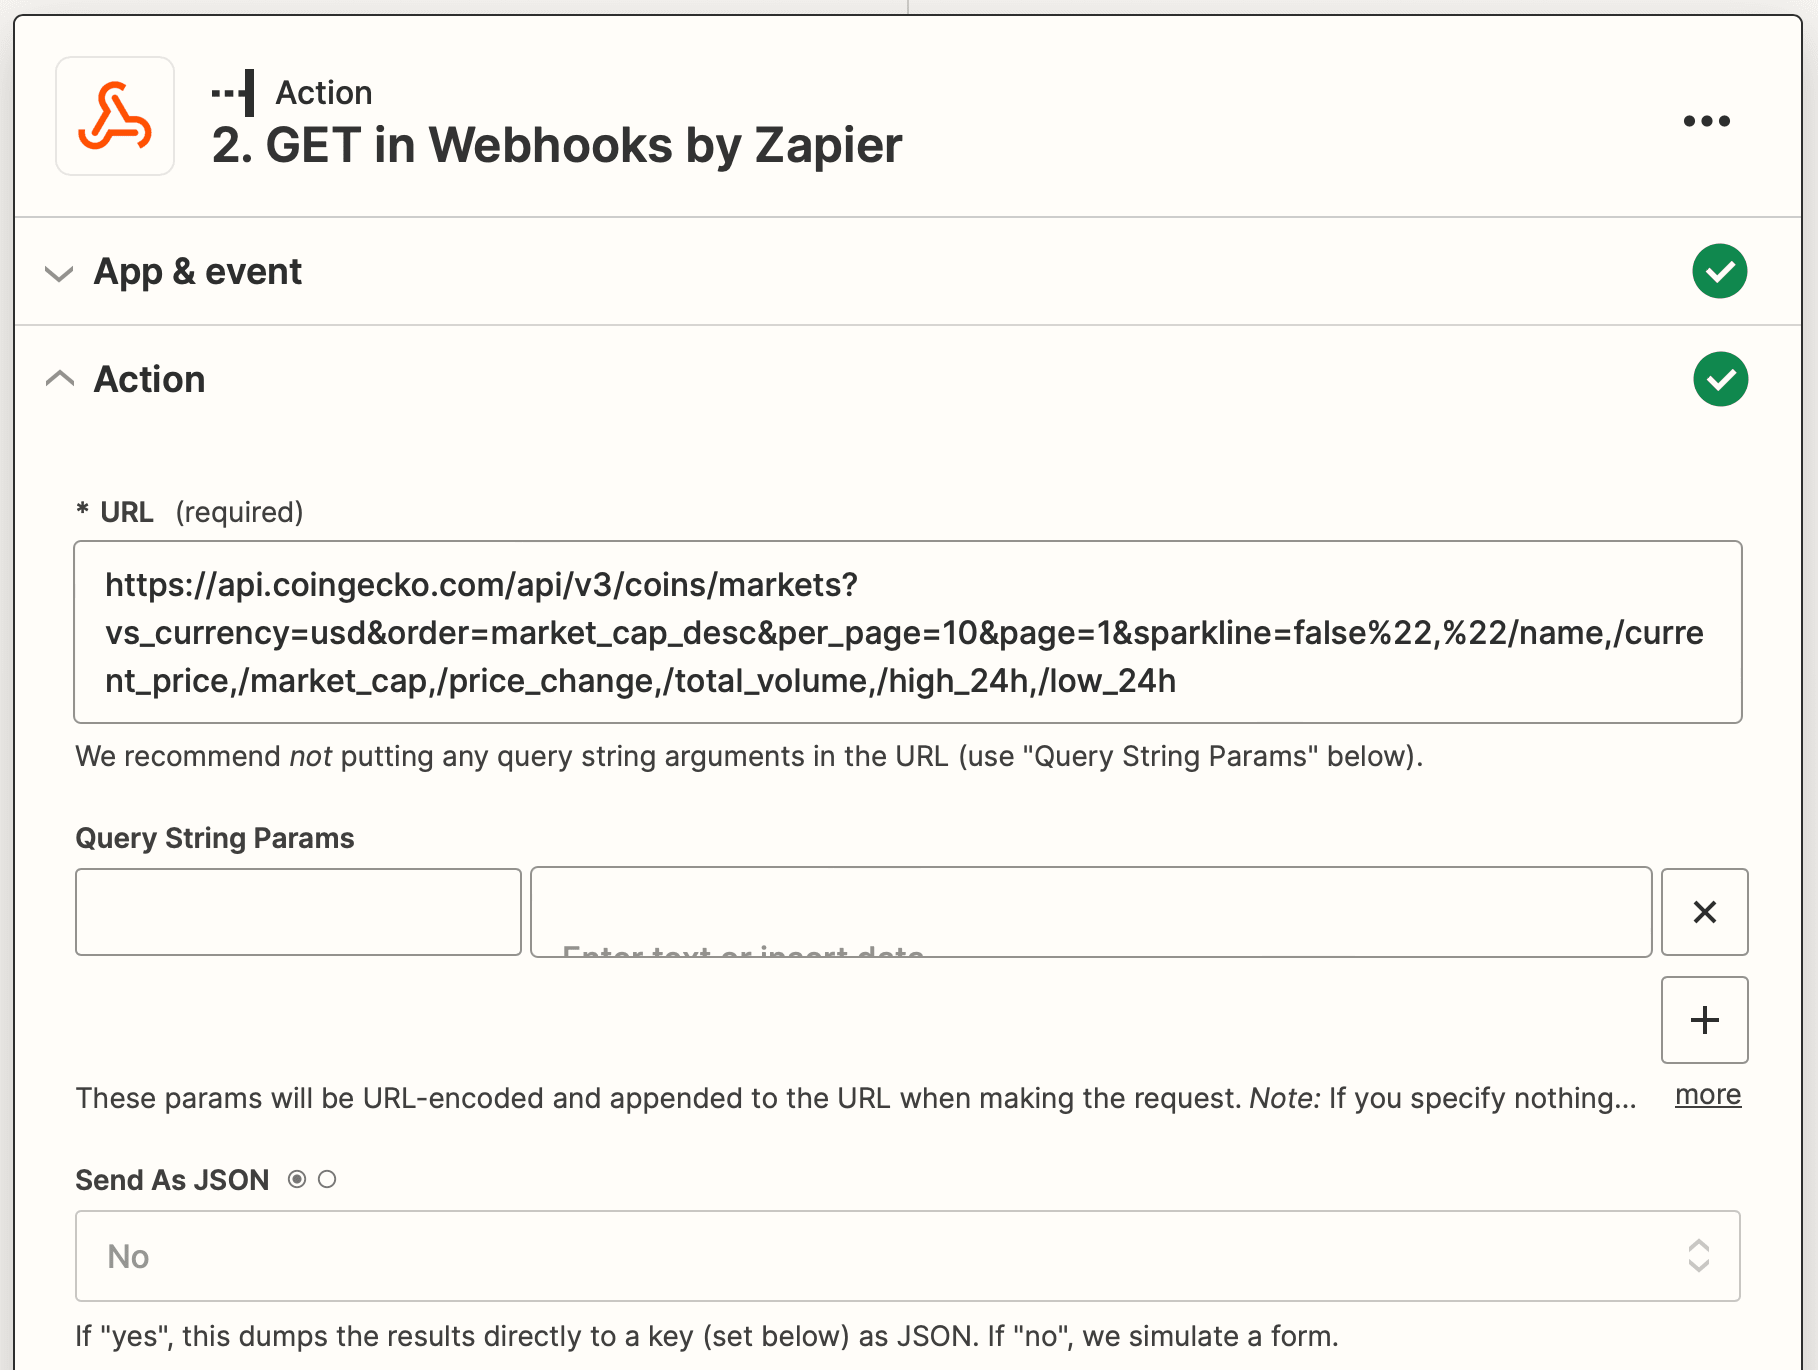 Screenshot of Zapier Webhooks by Zapier GET action setup